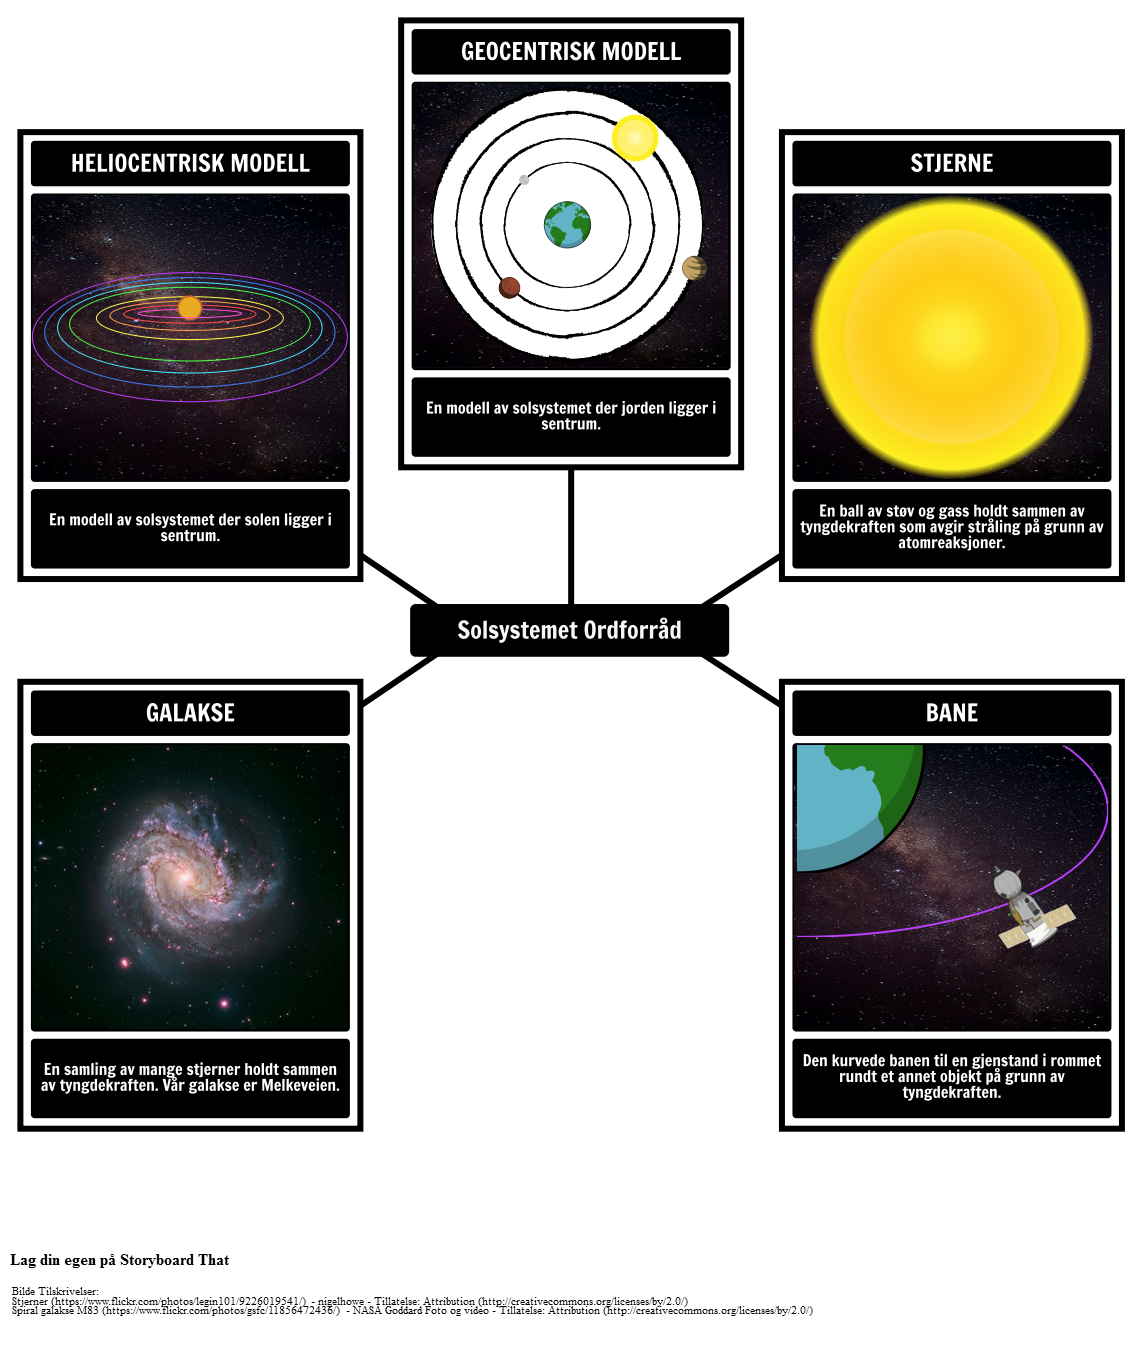 Solsystemet Ordforråd